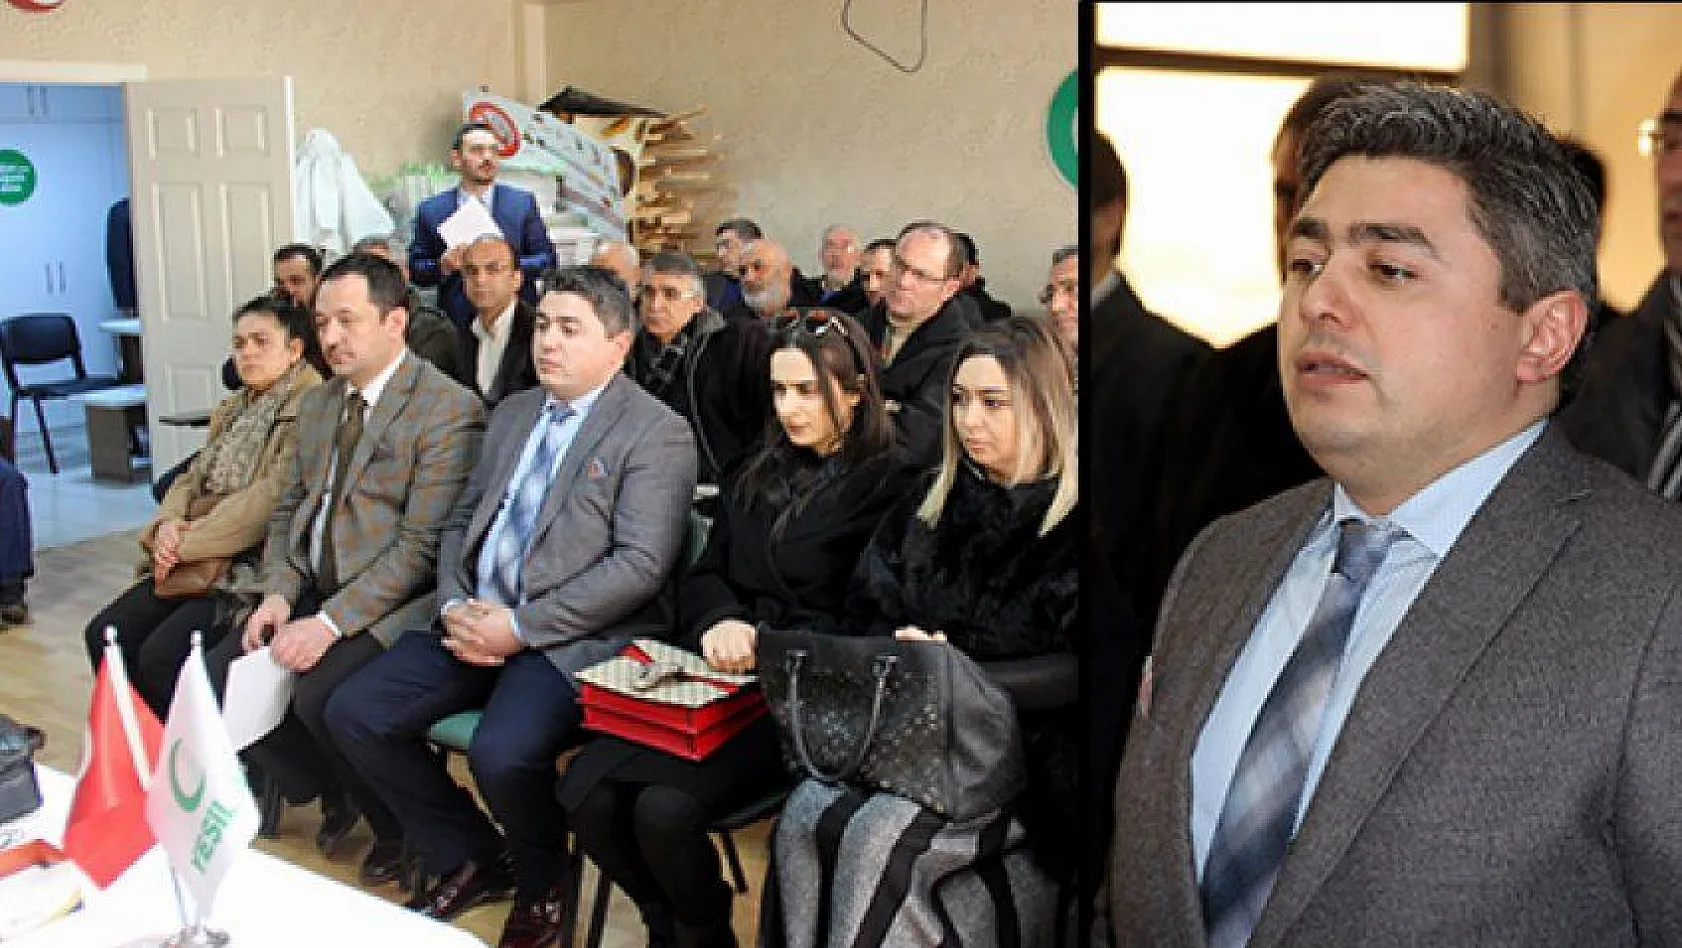 Yeşilay Kayseri Şubesi'nde yeni başkan Ömer Faruk Çöl oldu